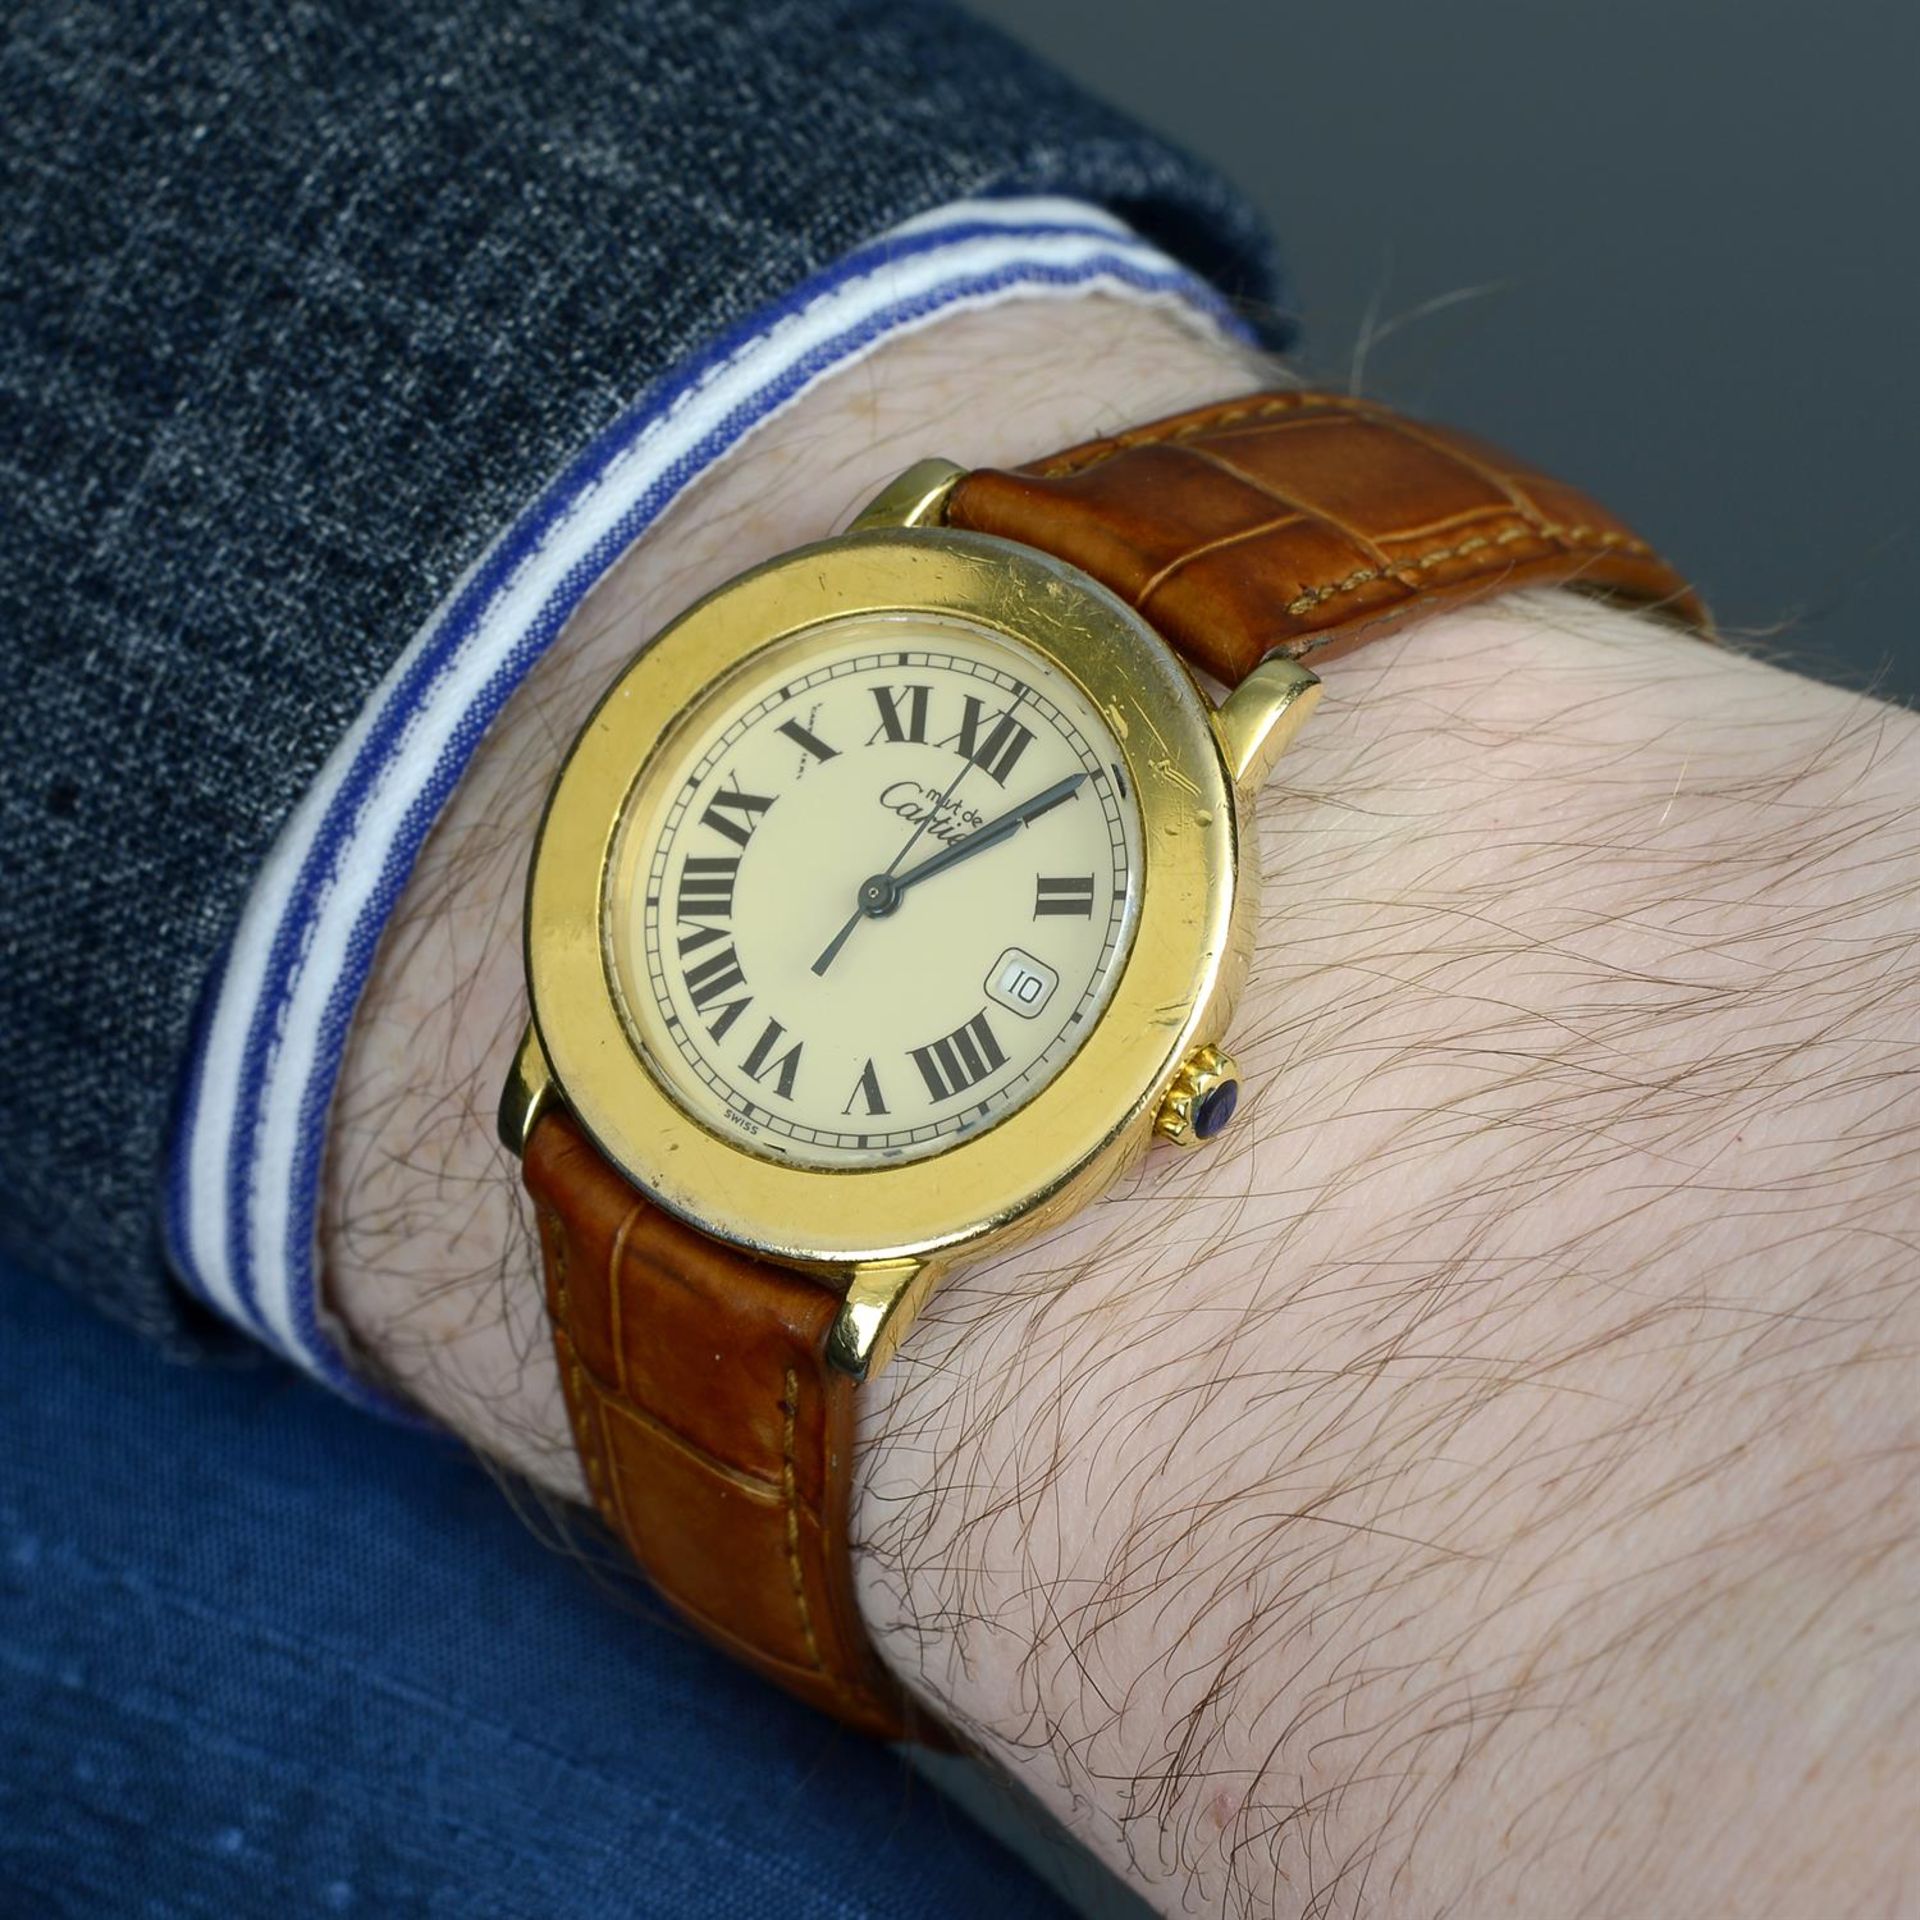 CARTIER - a gold plated Must de Cartier wrist watch, 32mm. - Image 5 of 5